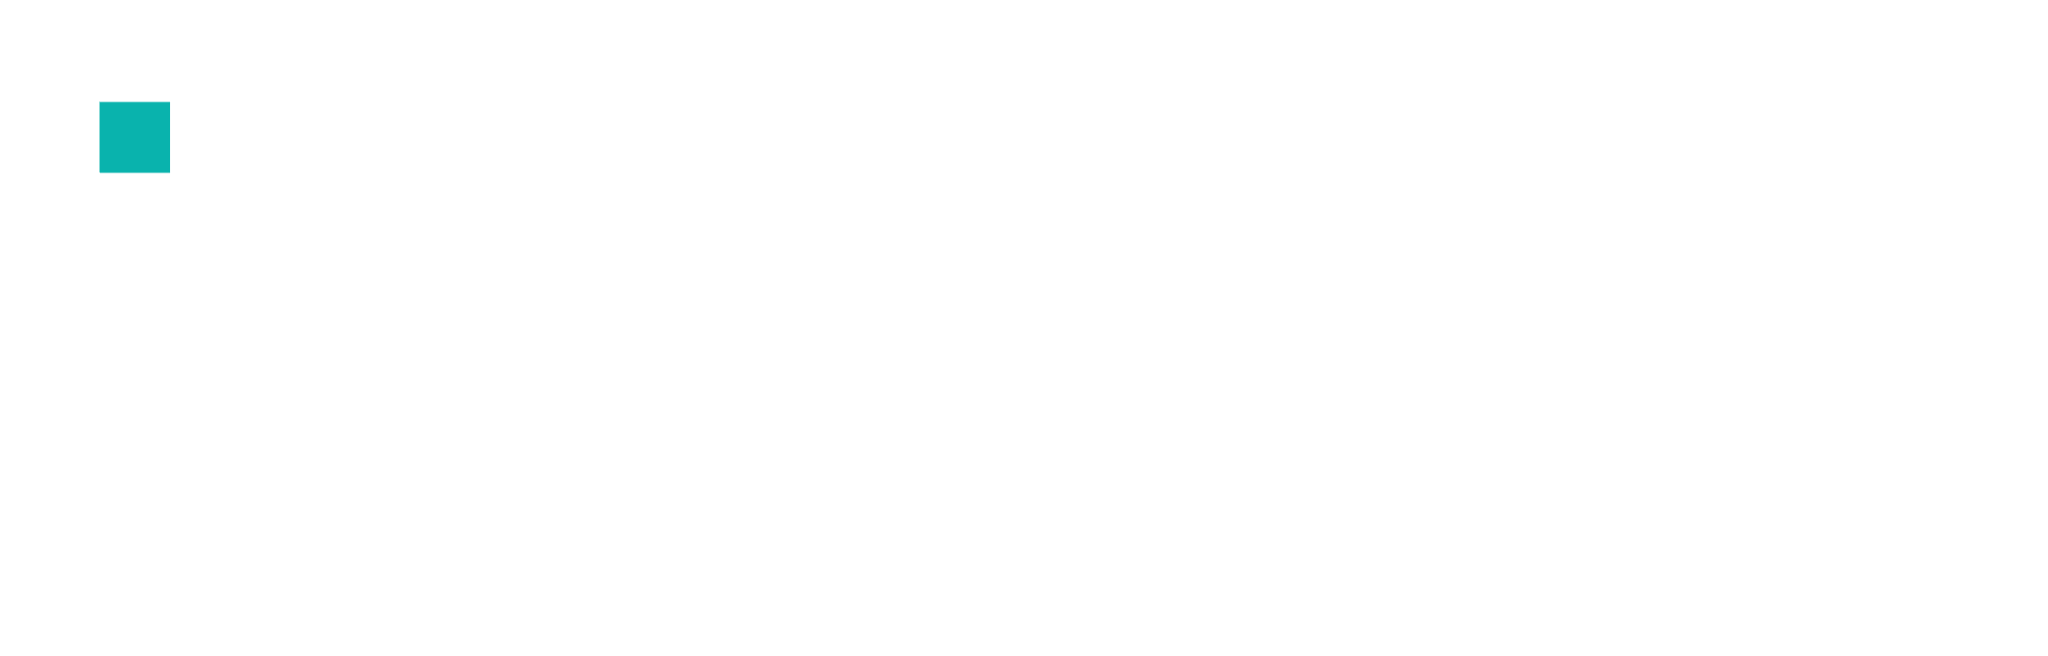 IDA Institut für Digitalisierung Aachen Wortmarke